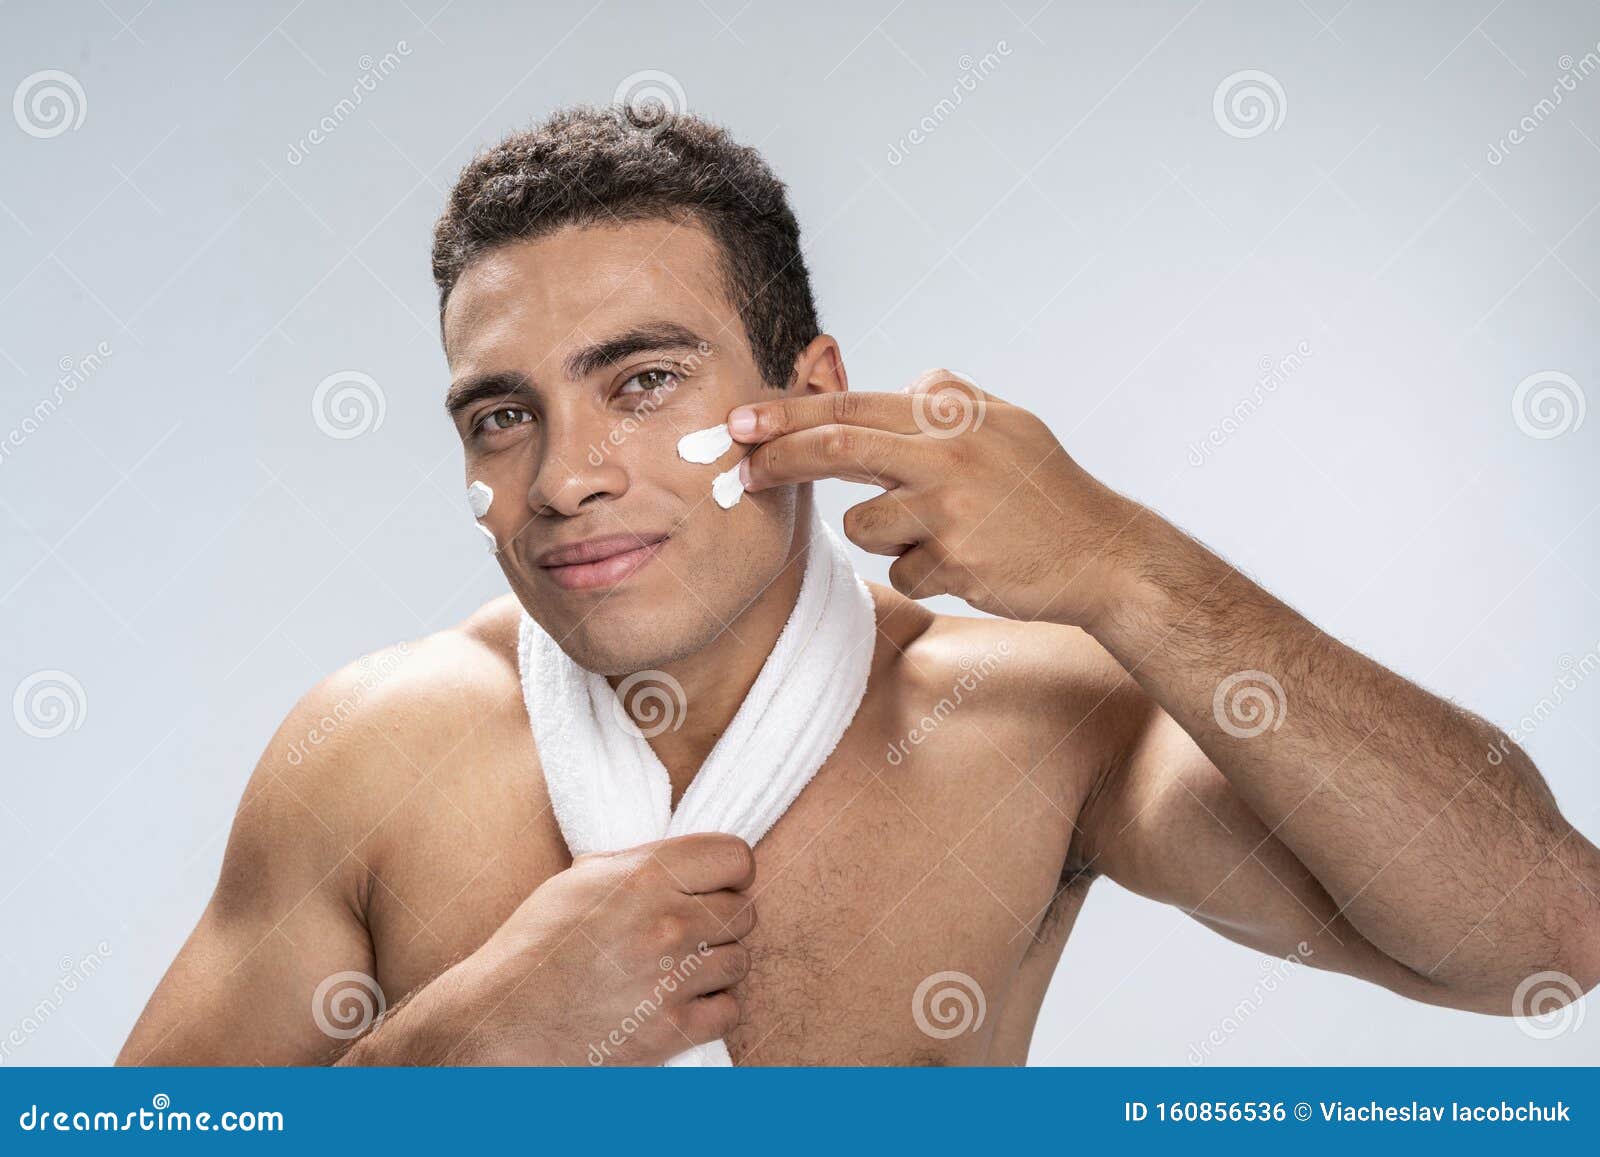 Man creaming